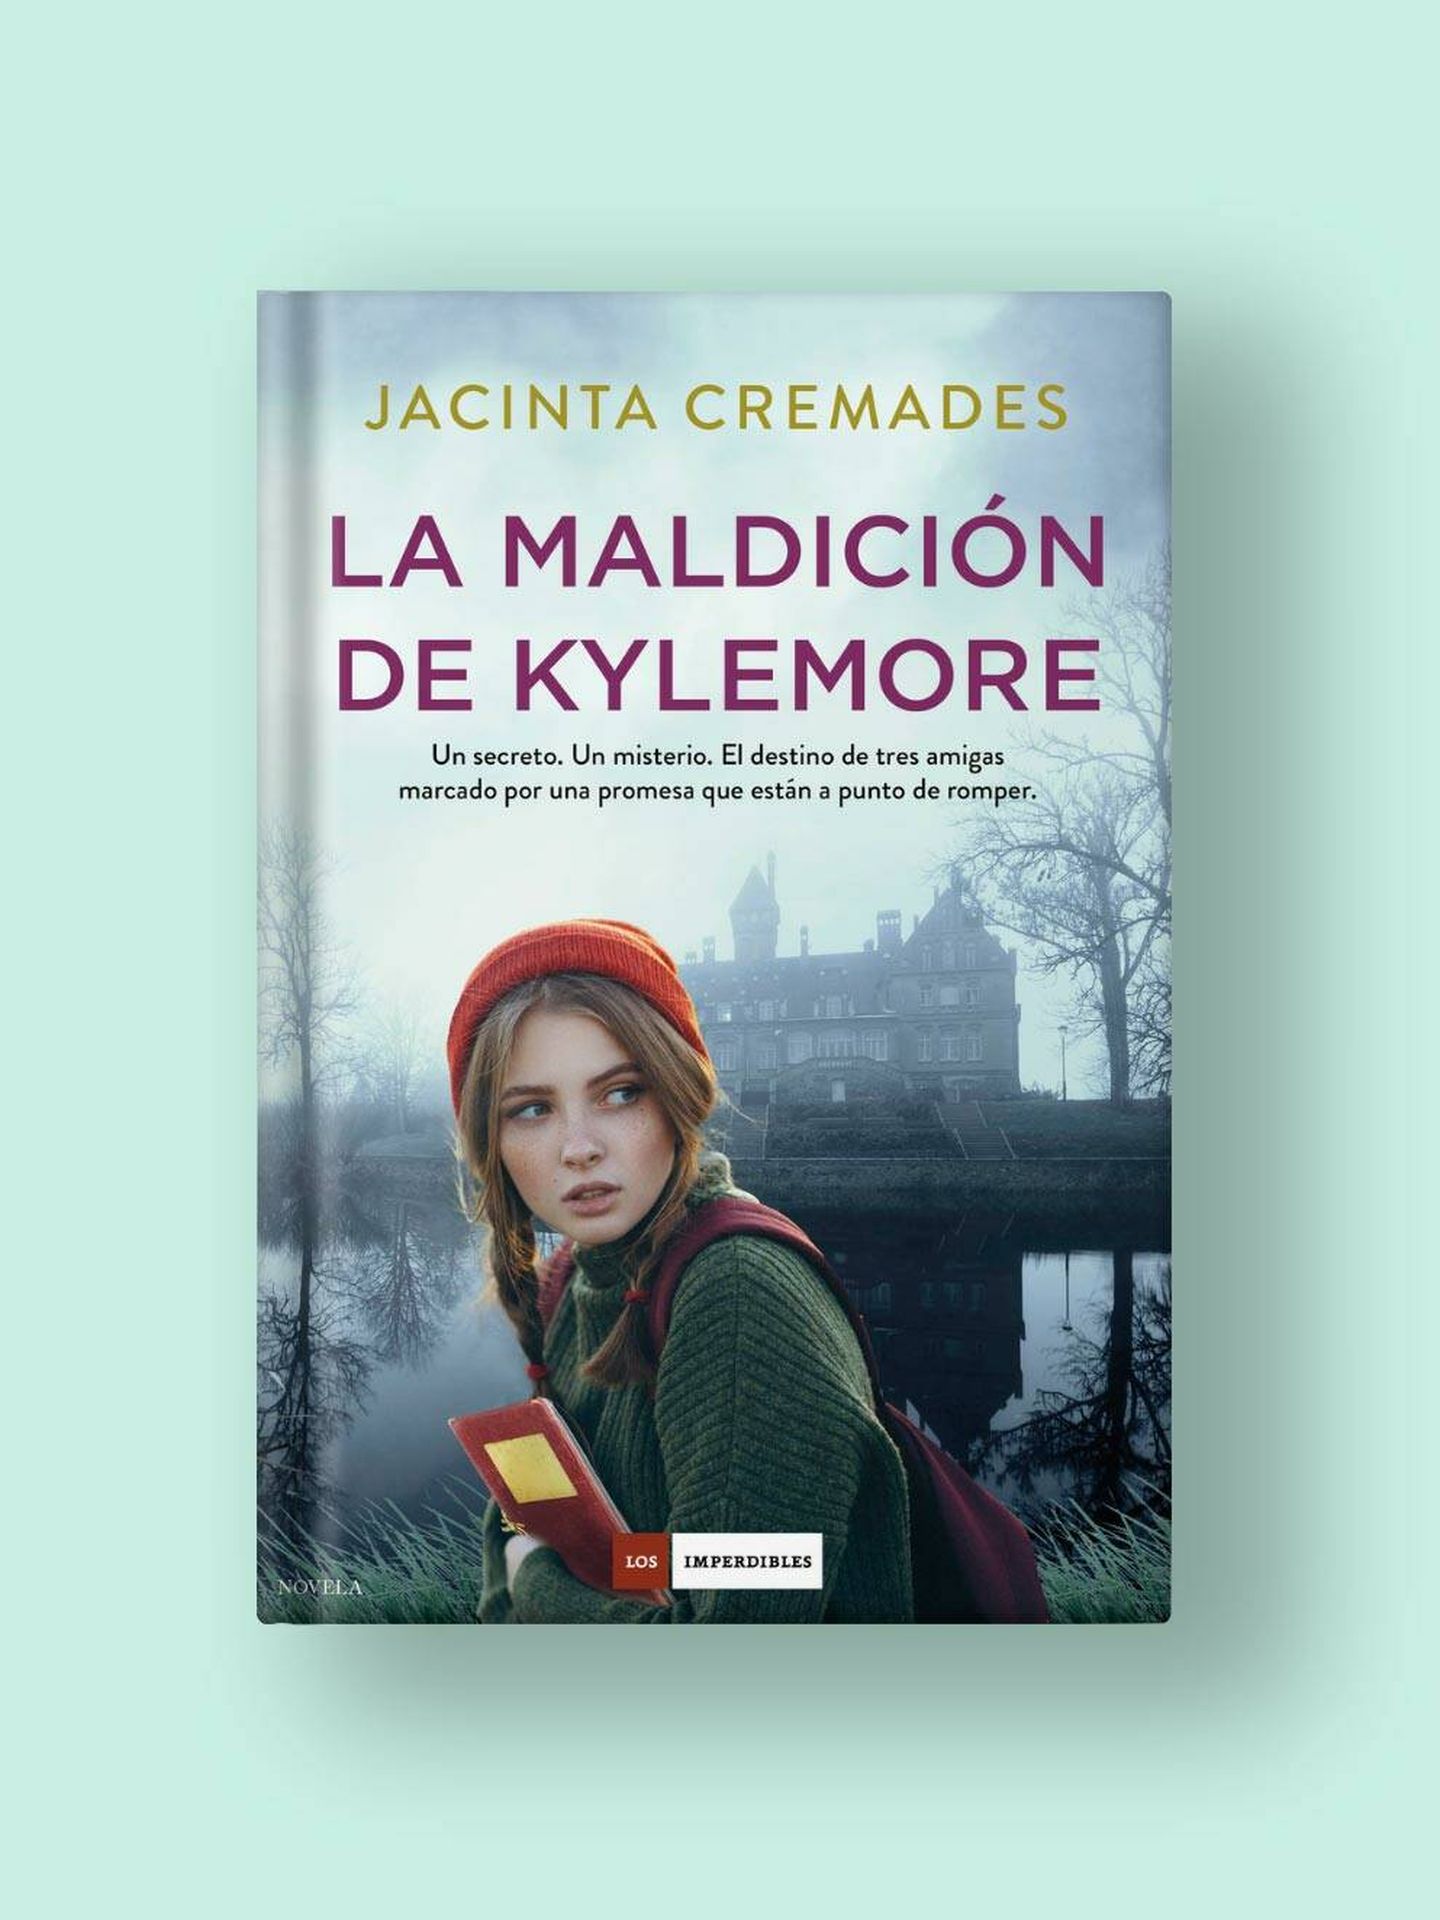 'La maldición de Kylemore', de Jacinta Cremades.